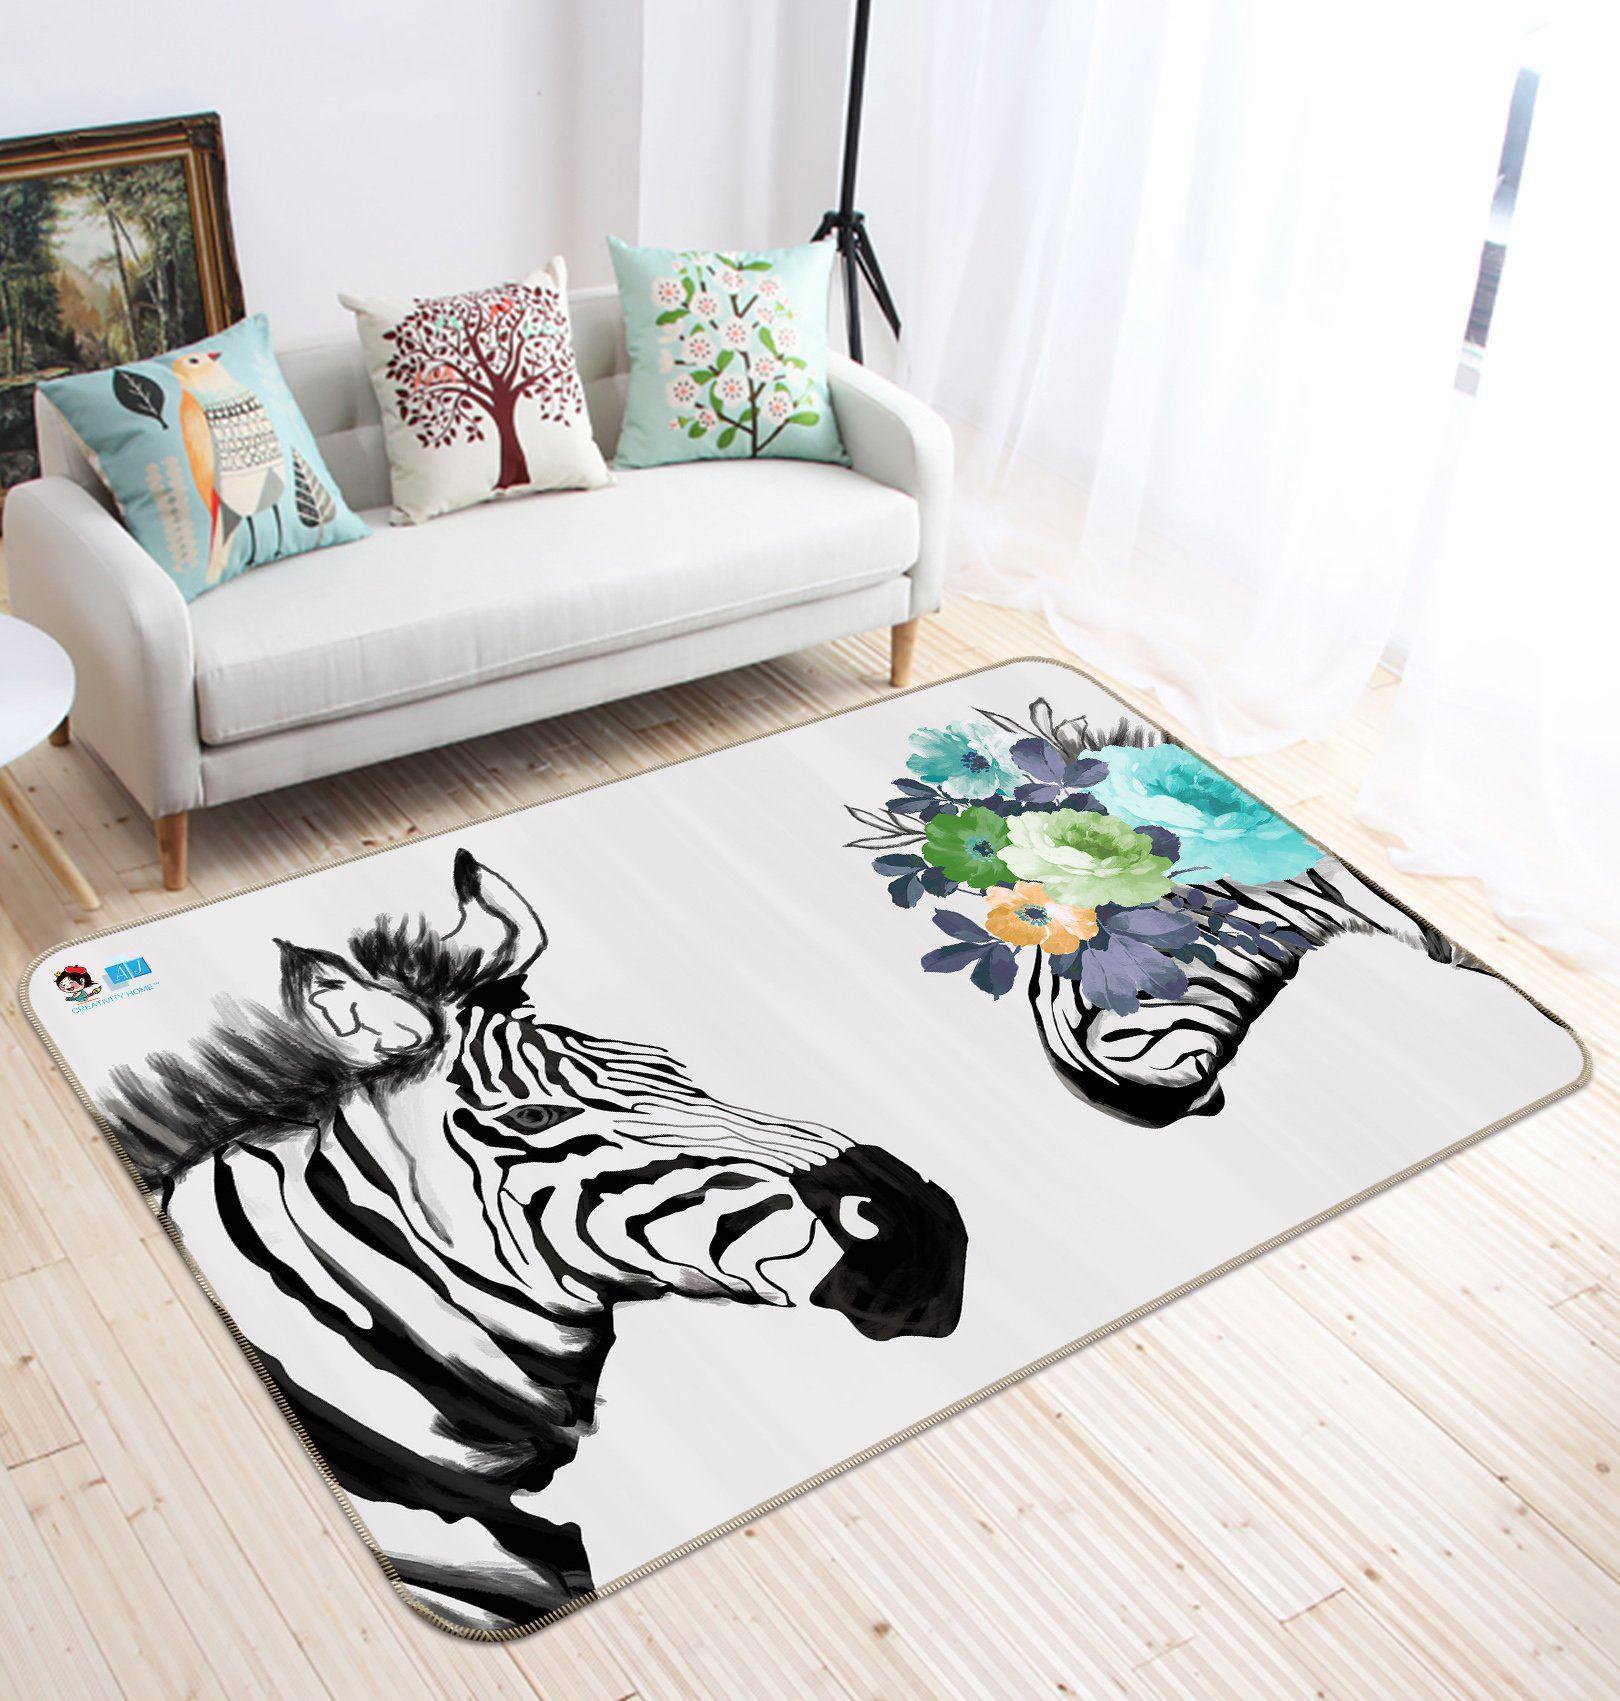 3D Home Carpet Zebra Vision 598 Non Slip Rug Mat, 60cmx90cm (23.6"x35.4")